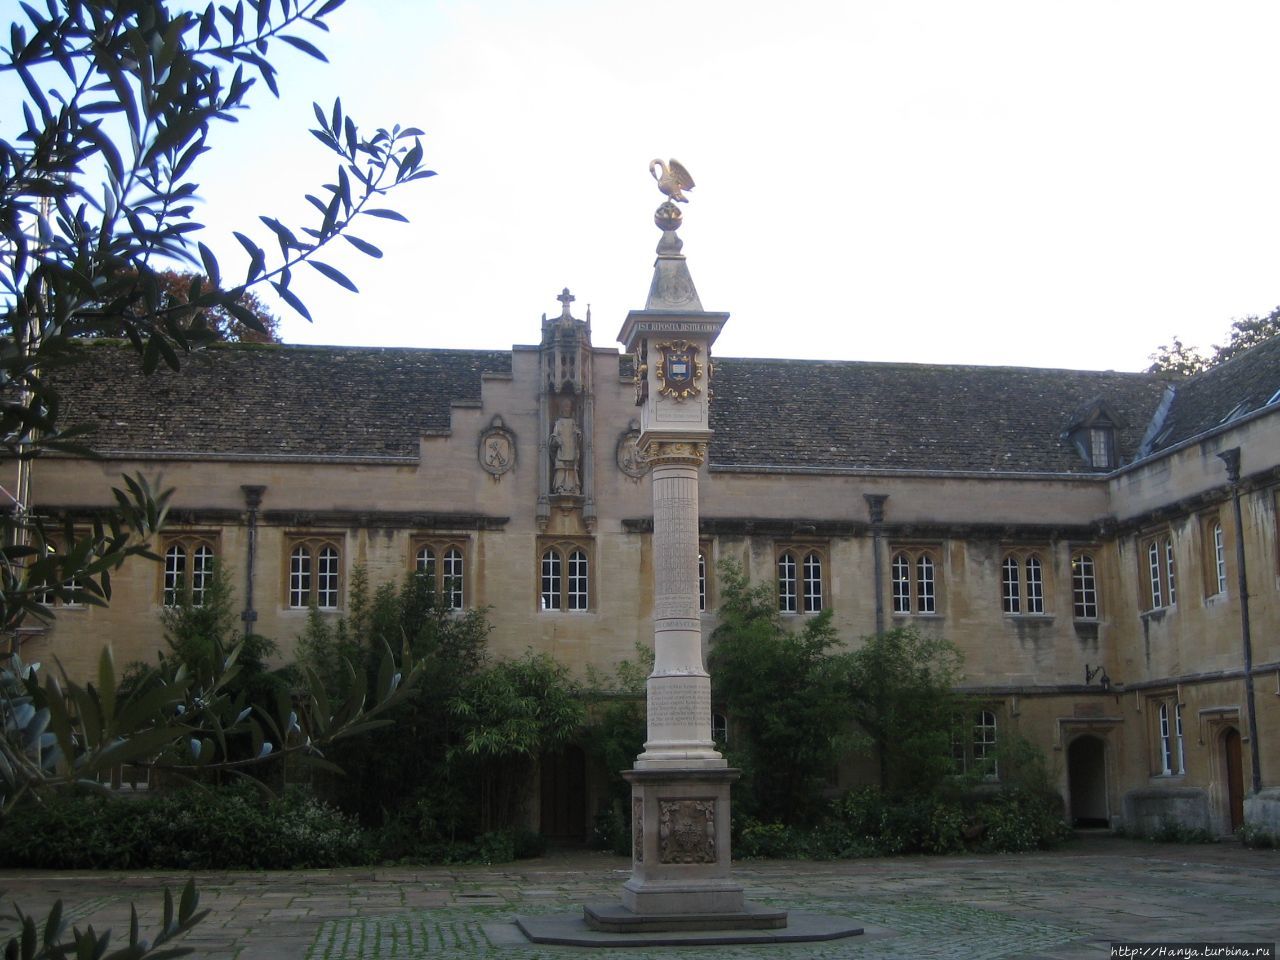 Колледж Корпус Кристи, Оксфорд. Главный двор с солнечными часами Sundbull Pelican